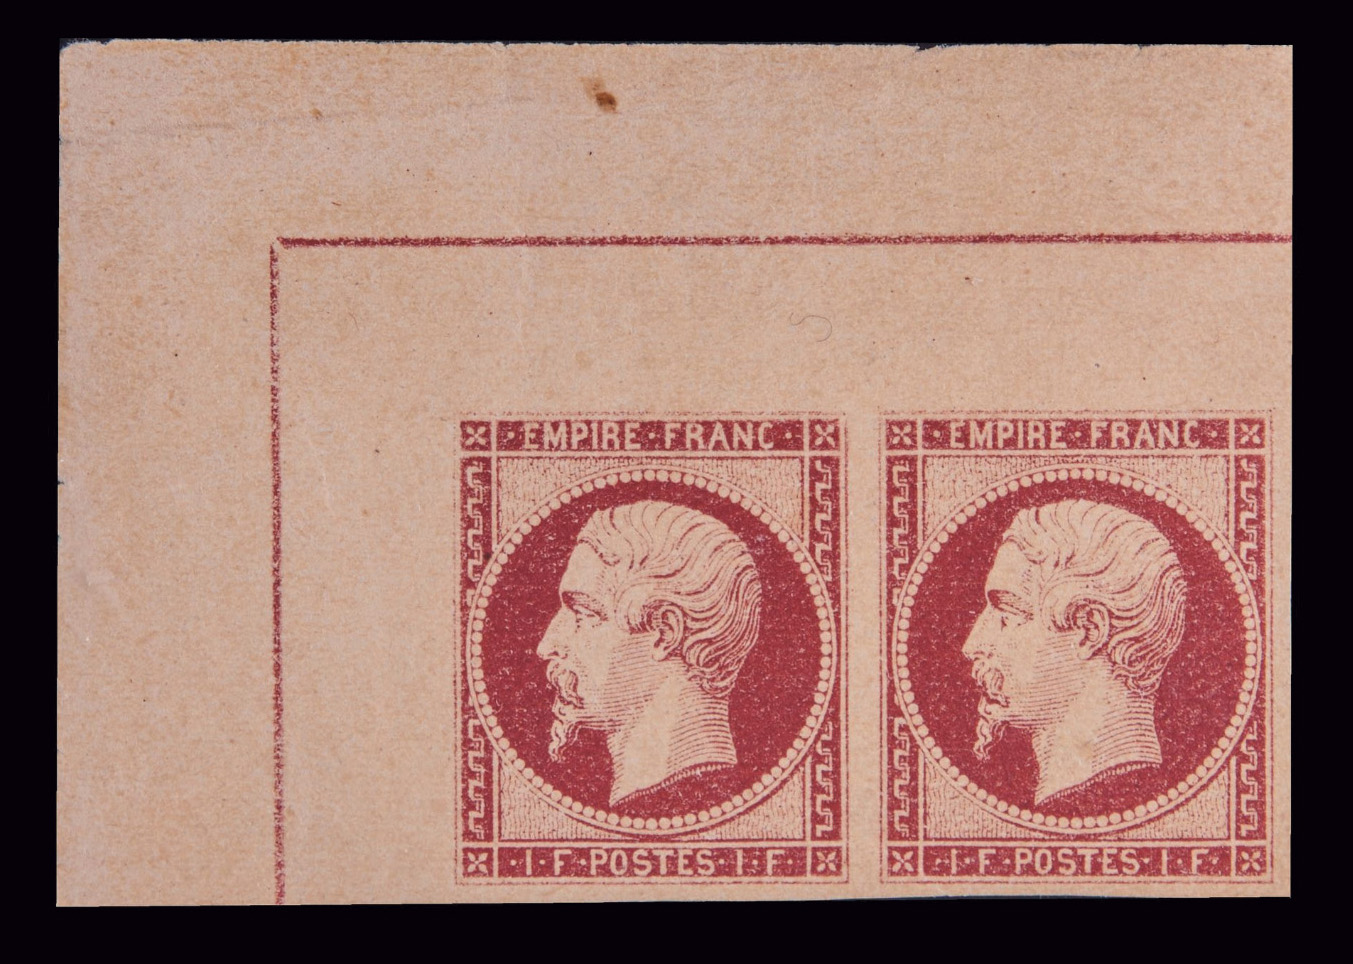 1 franc carmin de 1853, paire de timbres représentant Napoléon III de profil, portant la légende «Empire franc», Hôtel Drouot, 21 mai 2021